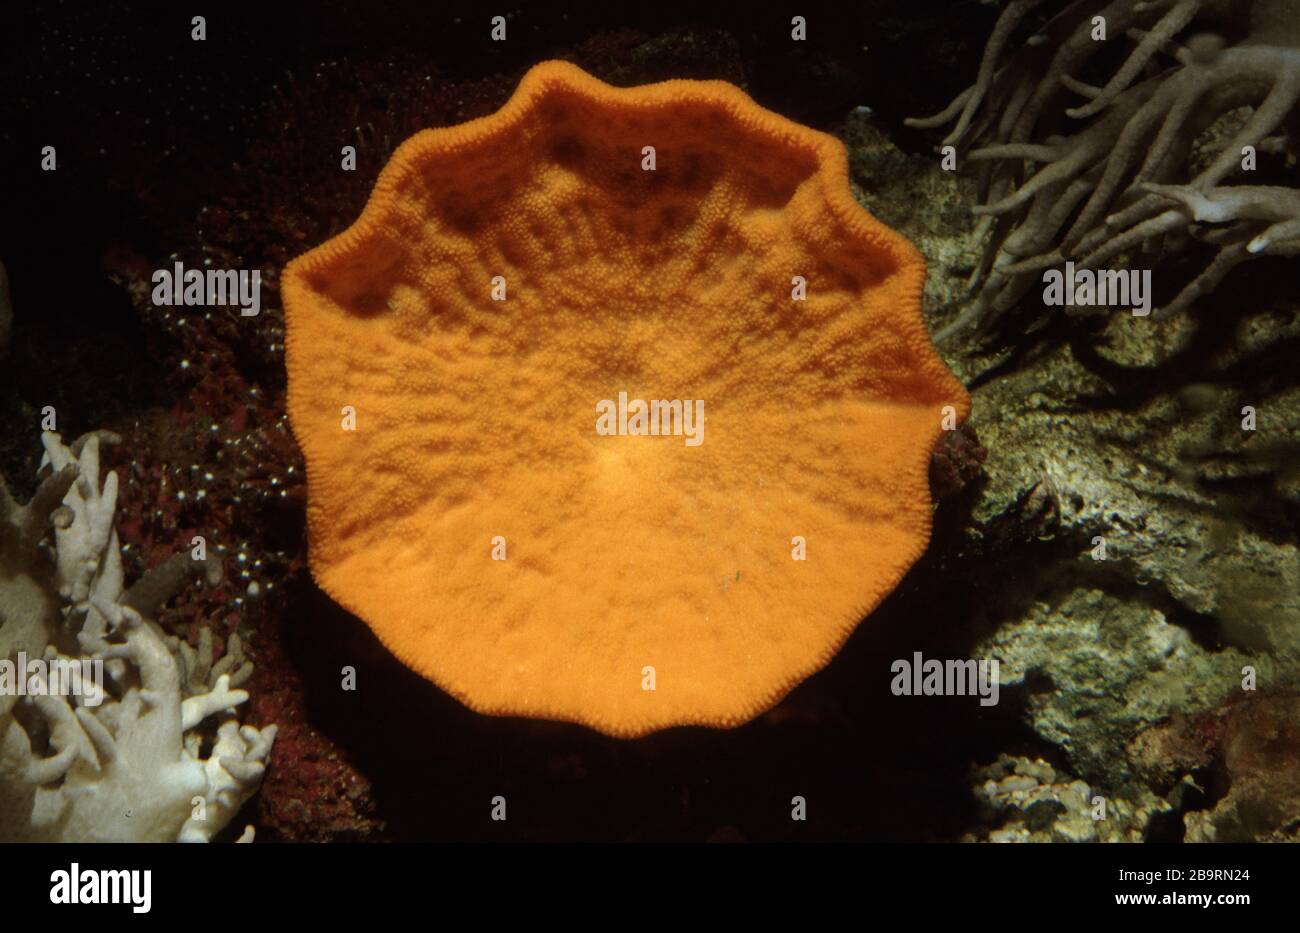 Orange stalked-cup sponge, Cymbastela sp. Stock Photo